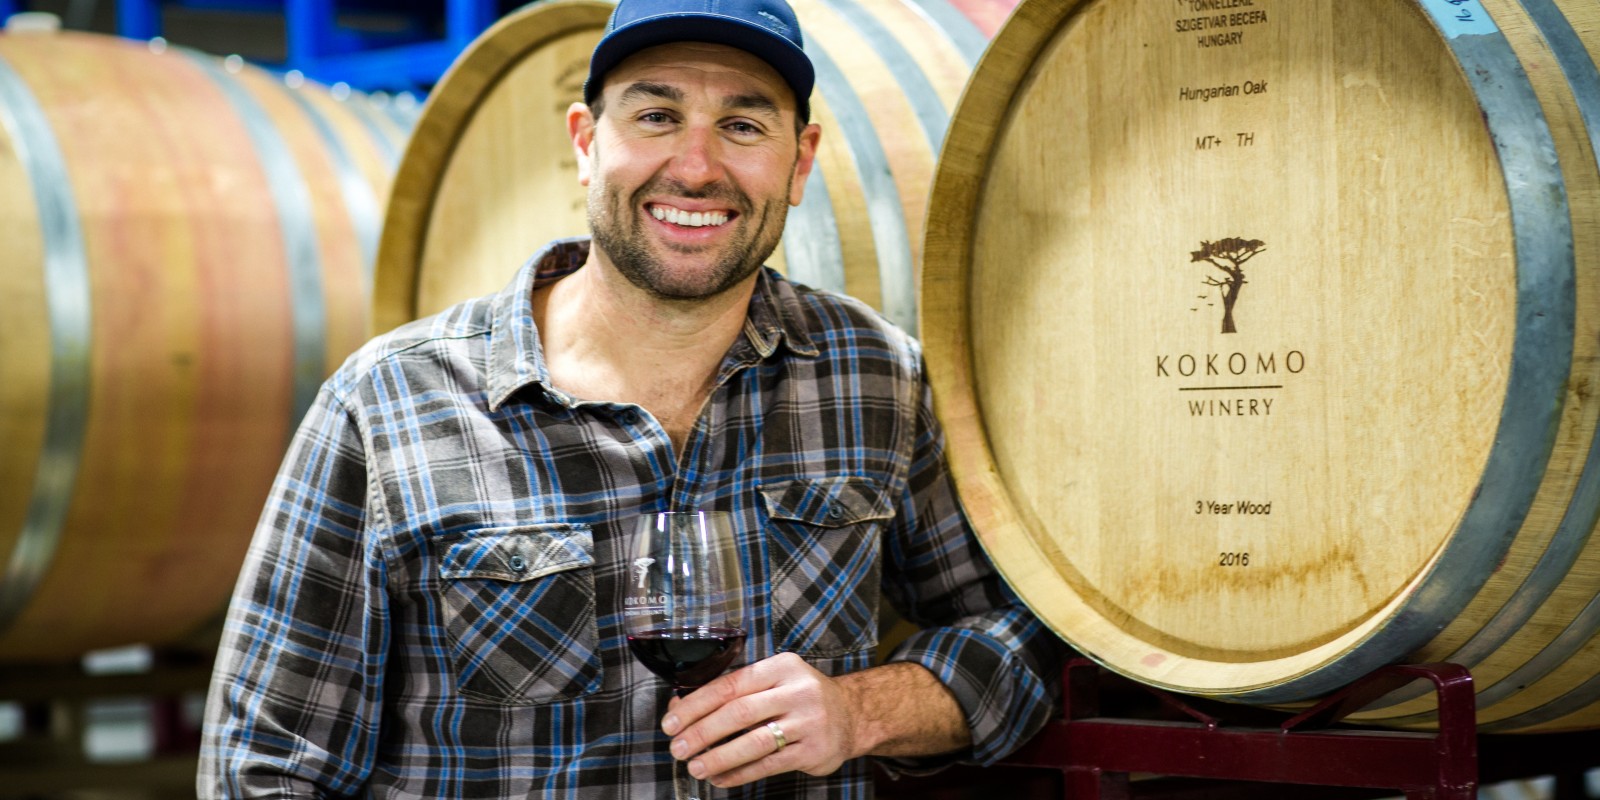 Kokomo Winery's Erik Miller